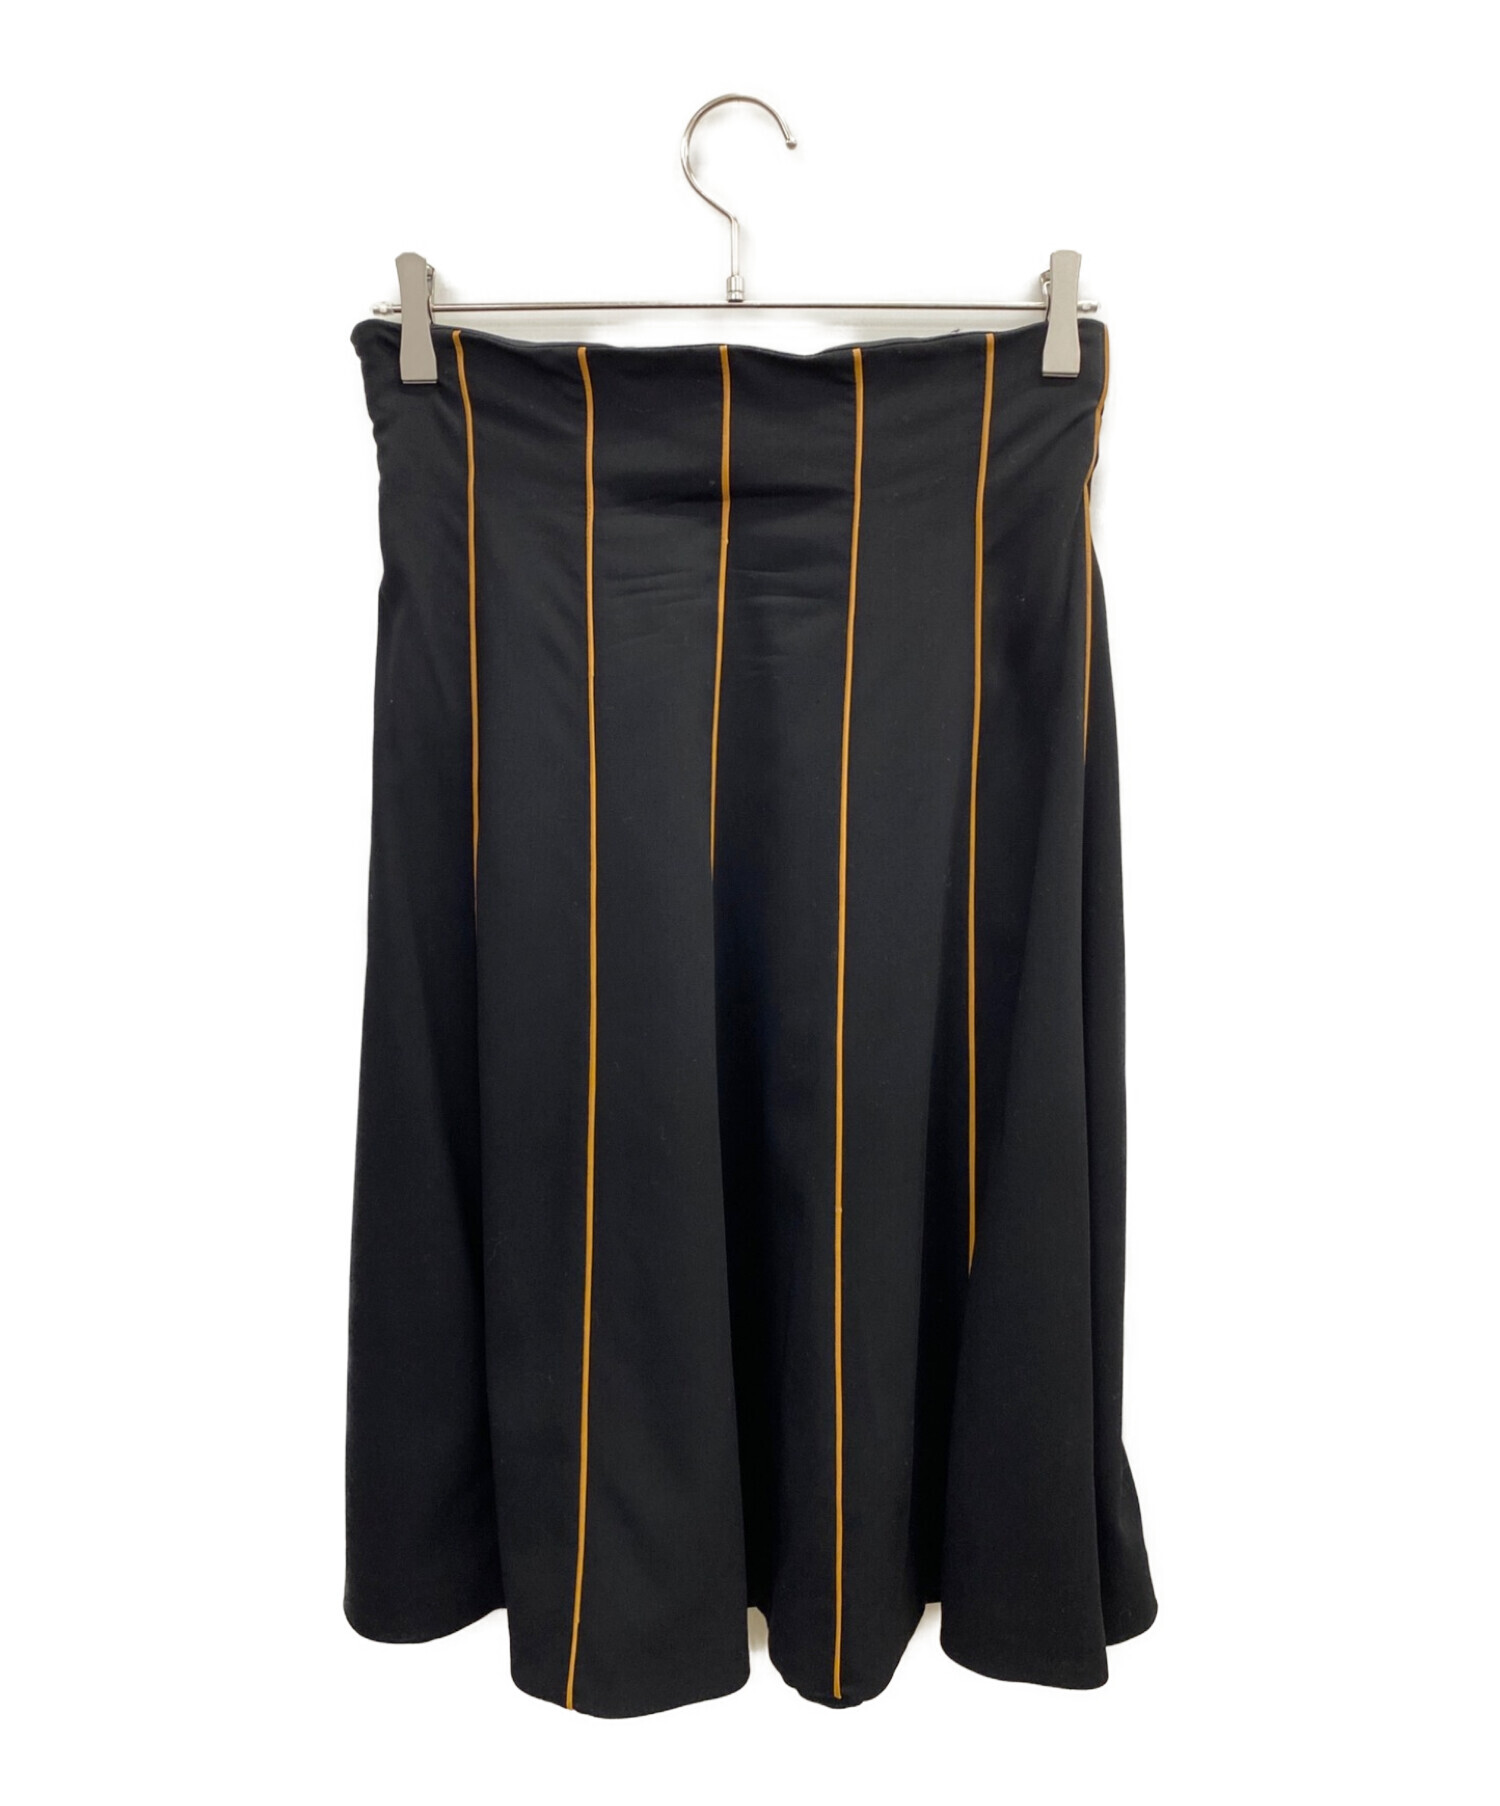 ブランドを選択する 【HERMES】カシミア100%スカート 38size - スカート